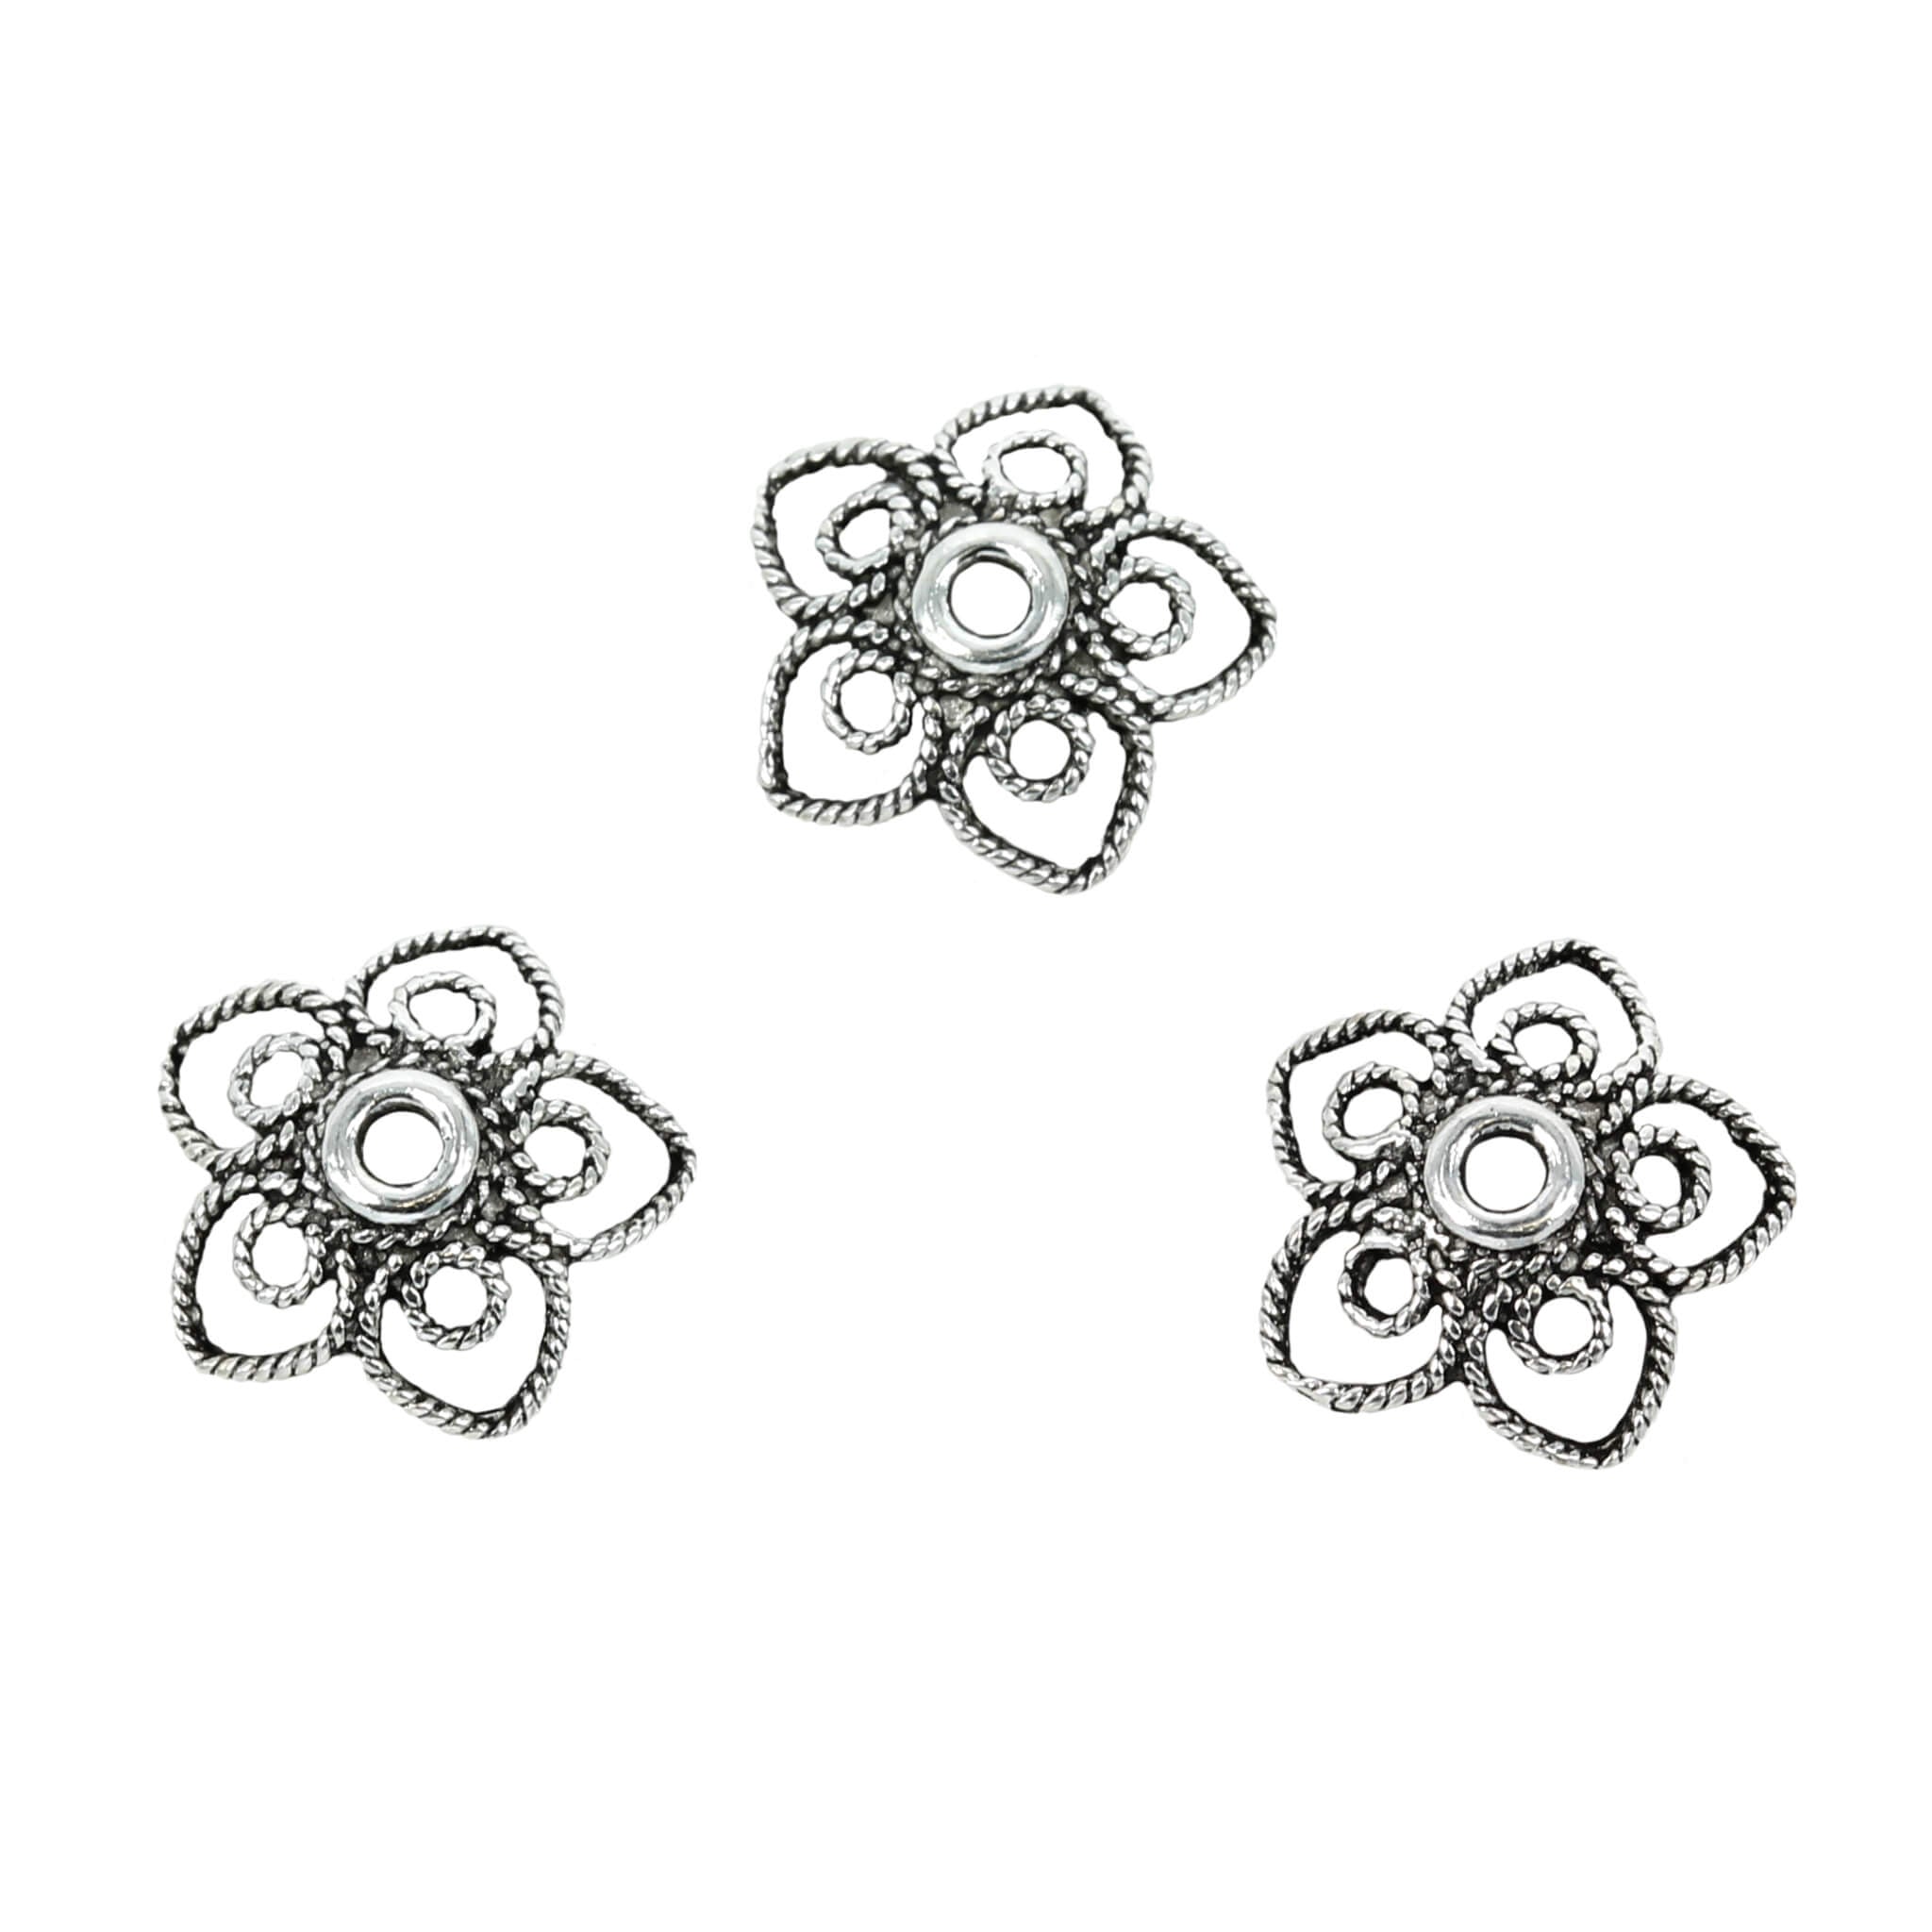 Flower Twisty-Wire Petals Bead Cap in Sterling Silver 11mm